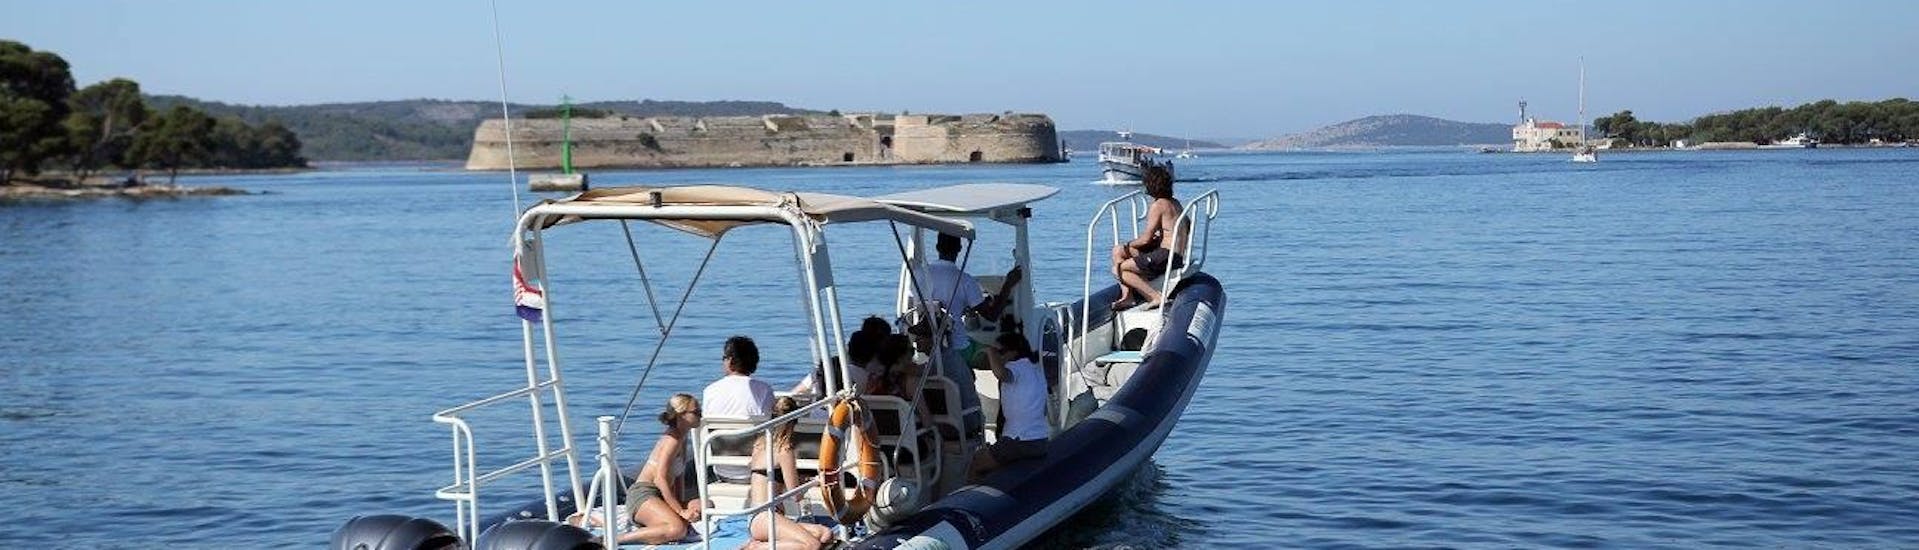 Paseo en barco privado a Krka National Park con baño en el mar & avistamiento de fauna.